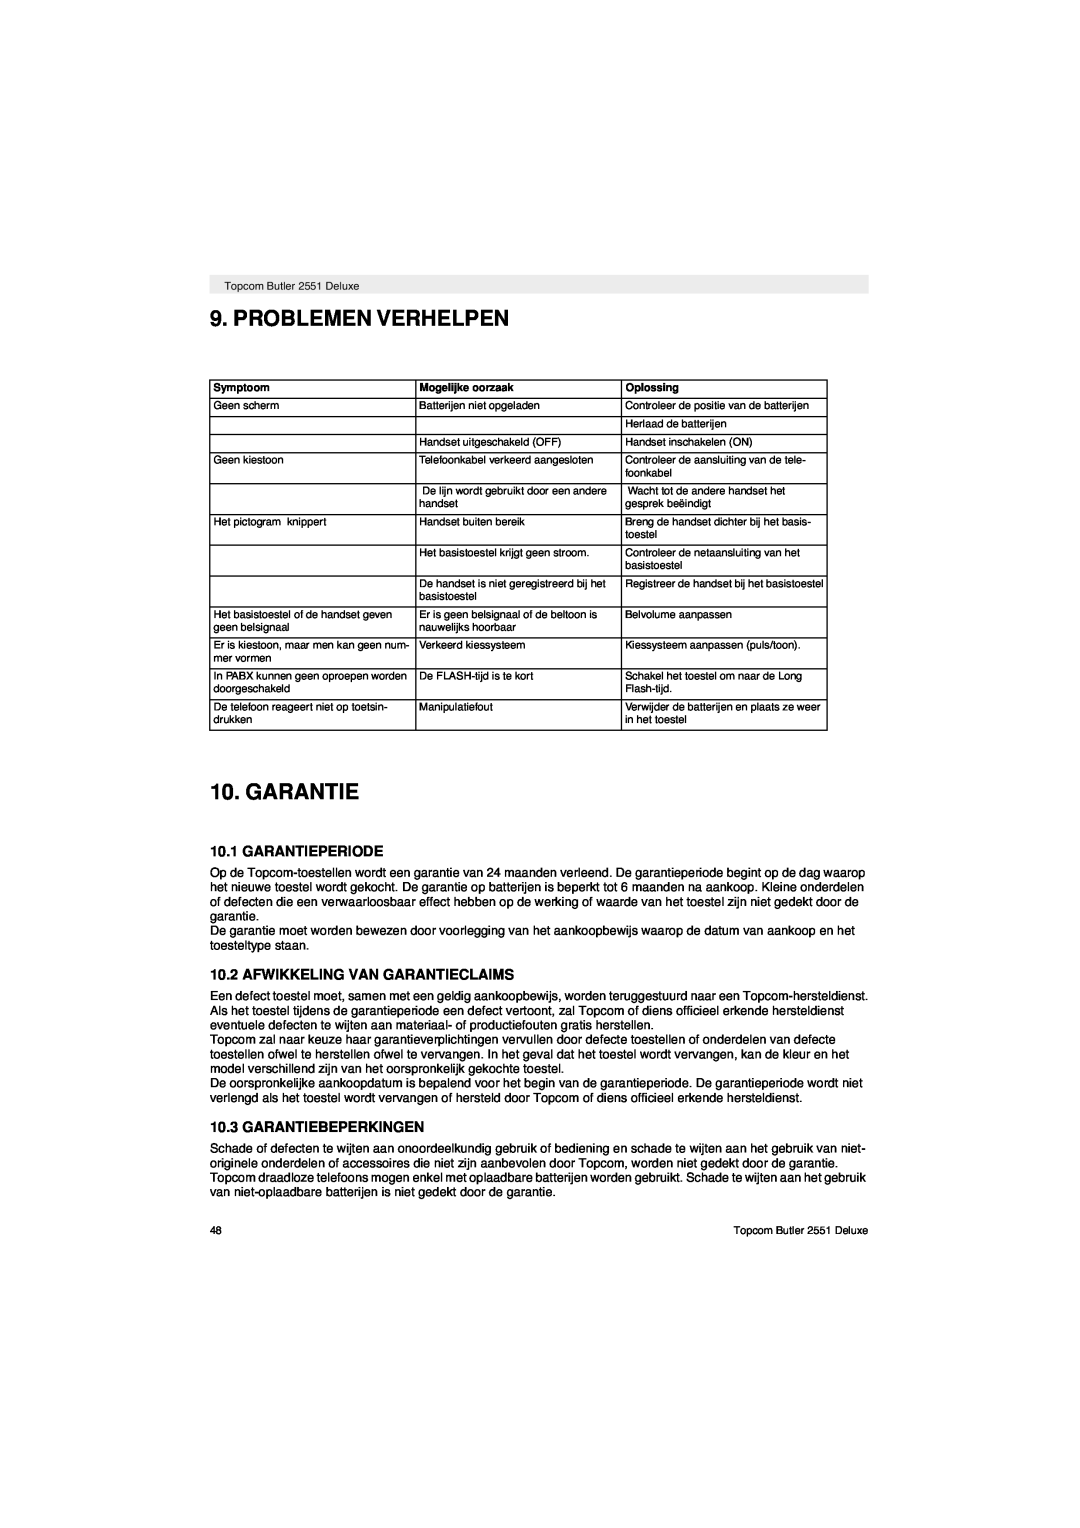 Topcom 2551 manual Problemen Verhelpen, Garantieperiode, Afwikkeling Van Garantieclaims, Garantiebeperkingen 